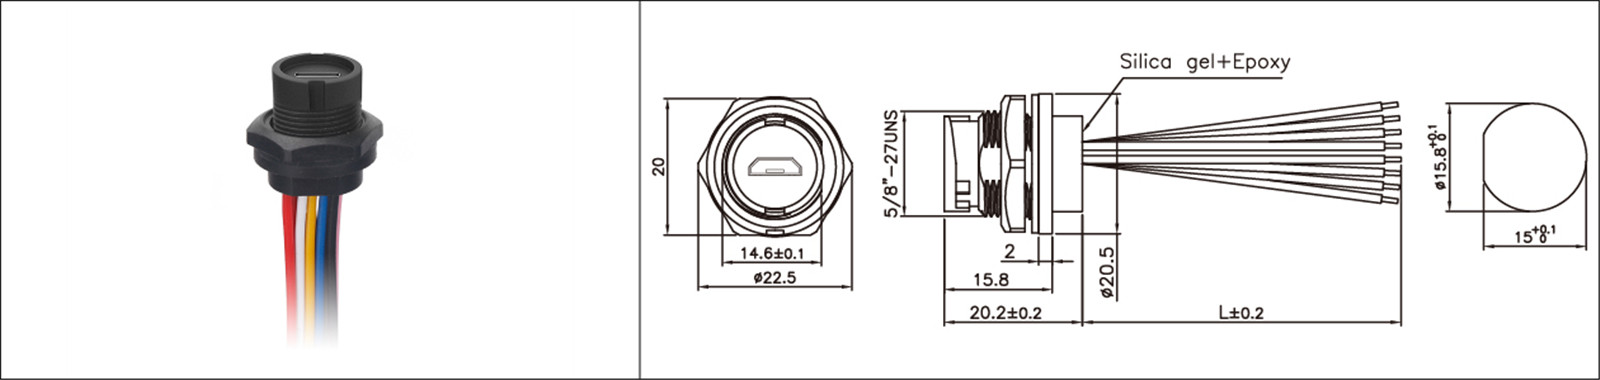 Mikro-USB-paneelmontering tipe 2.0 3.0 vroulike en manlike waterdigte IP67 oorvorm verlengkabel industriële connector-02 (1)